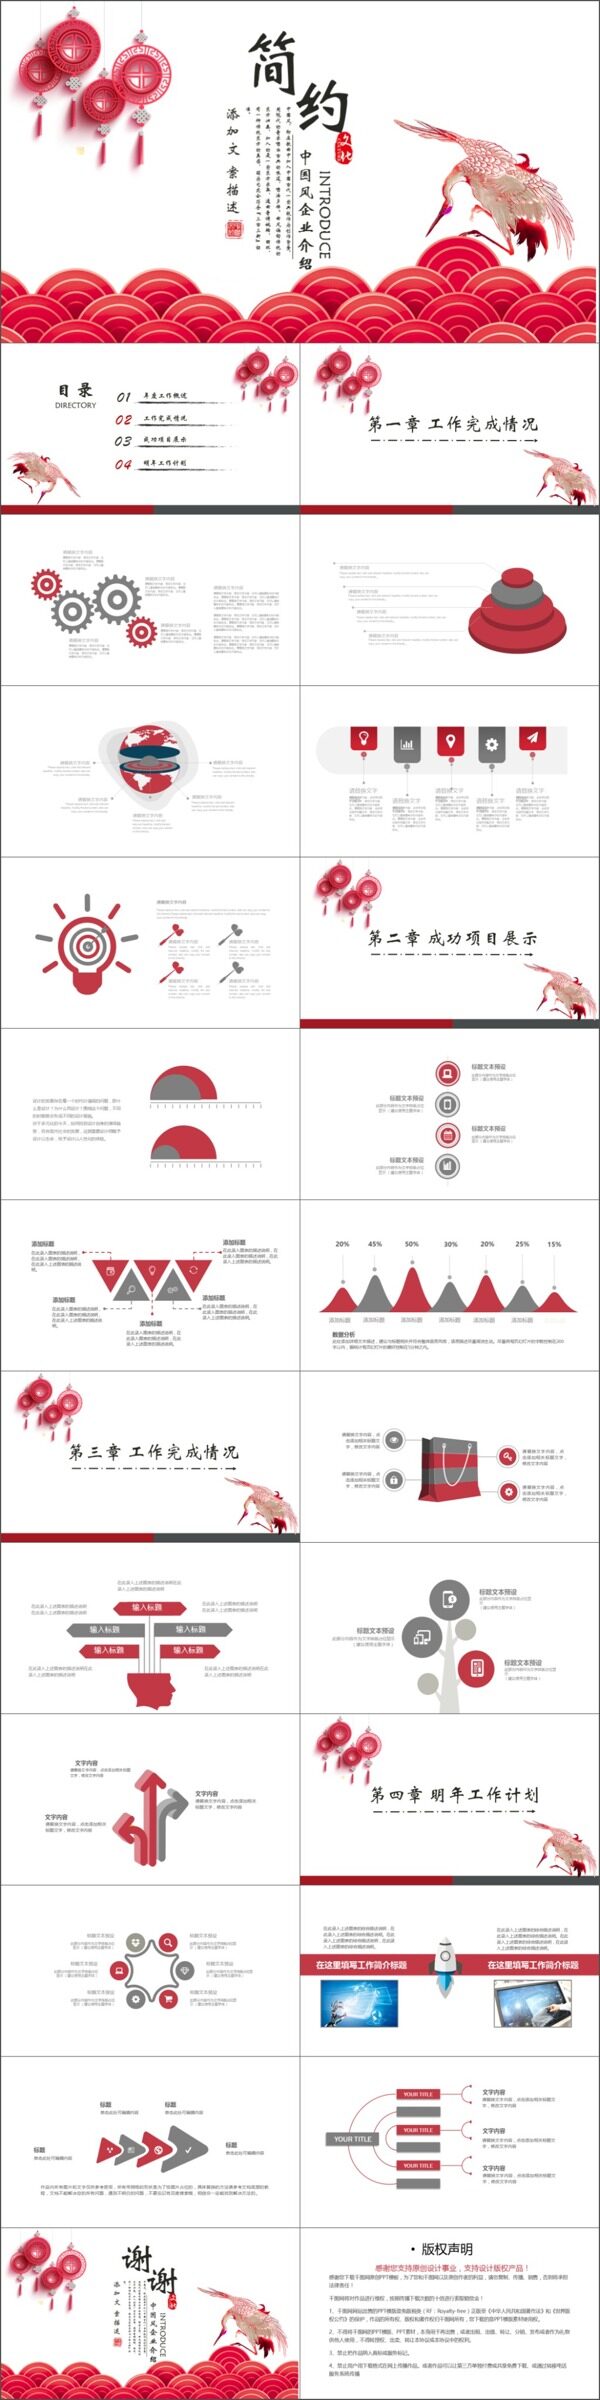 2019红灰色企业宣传中国风PPT模板设计